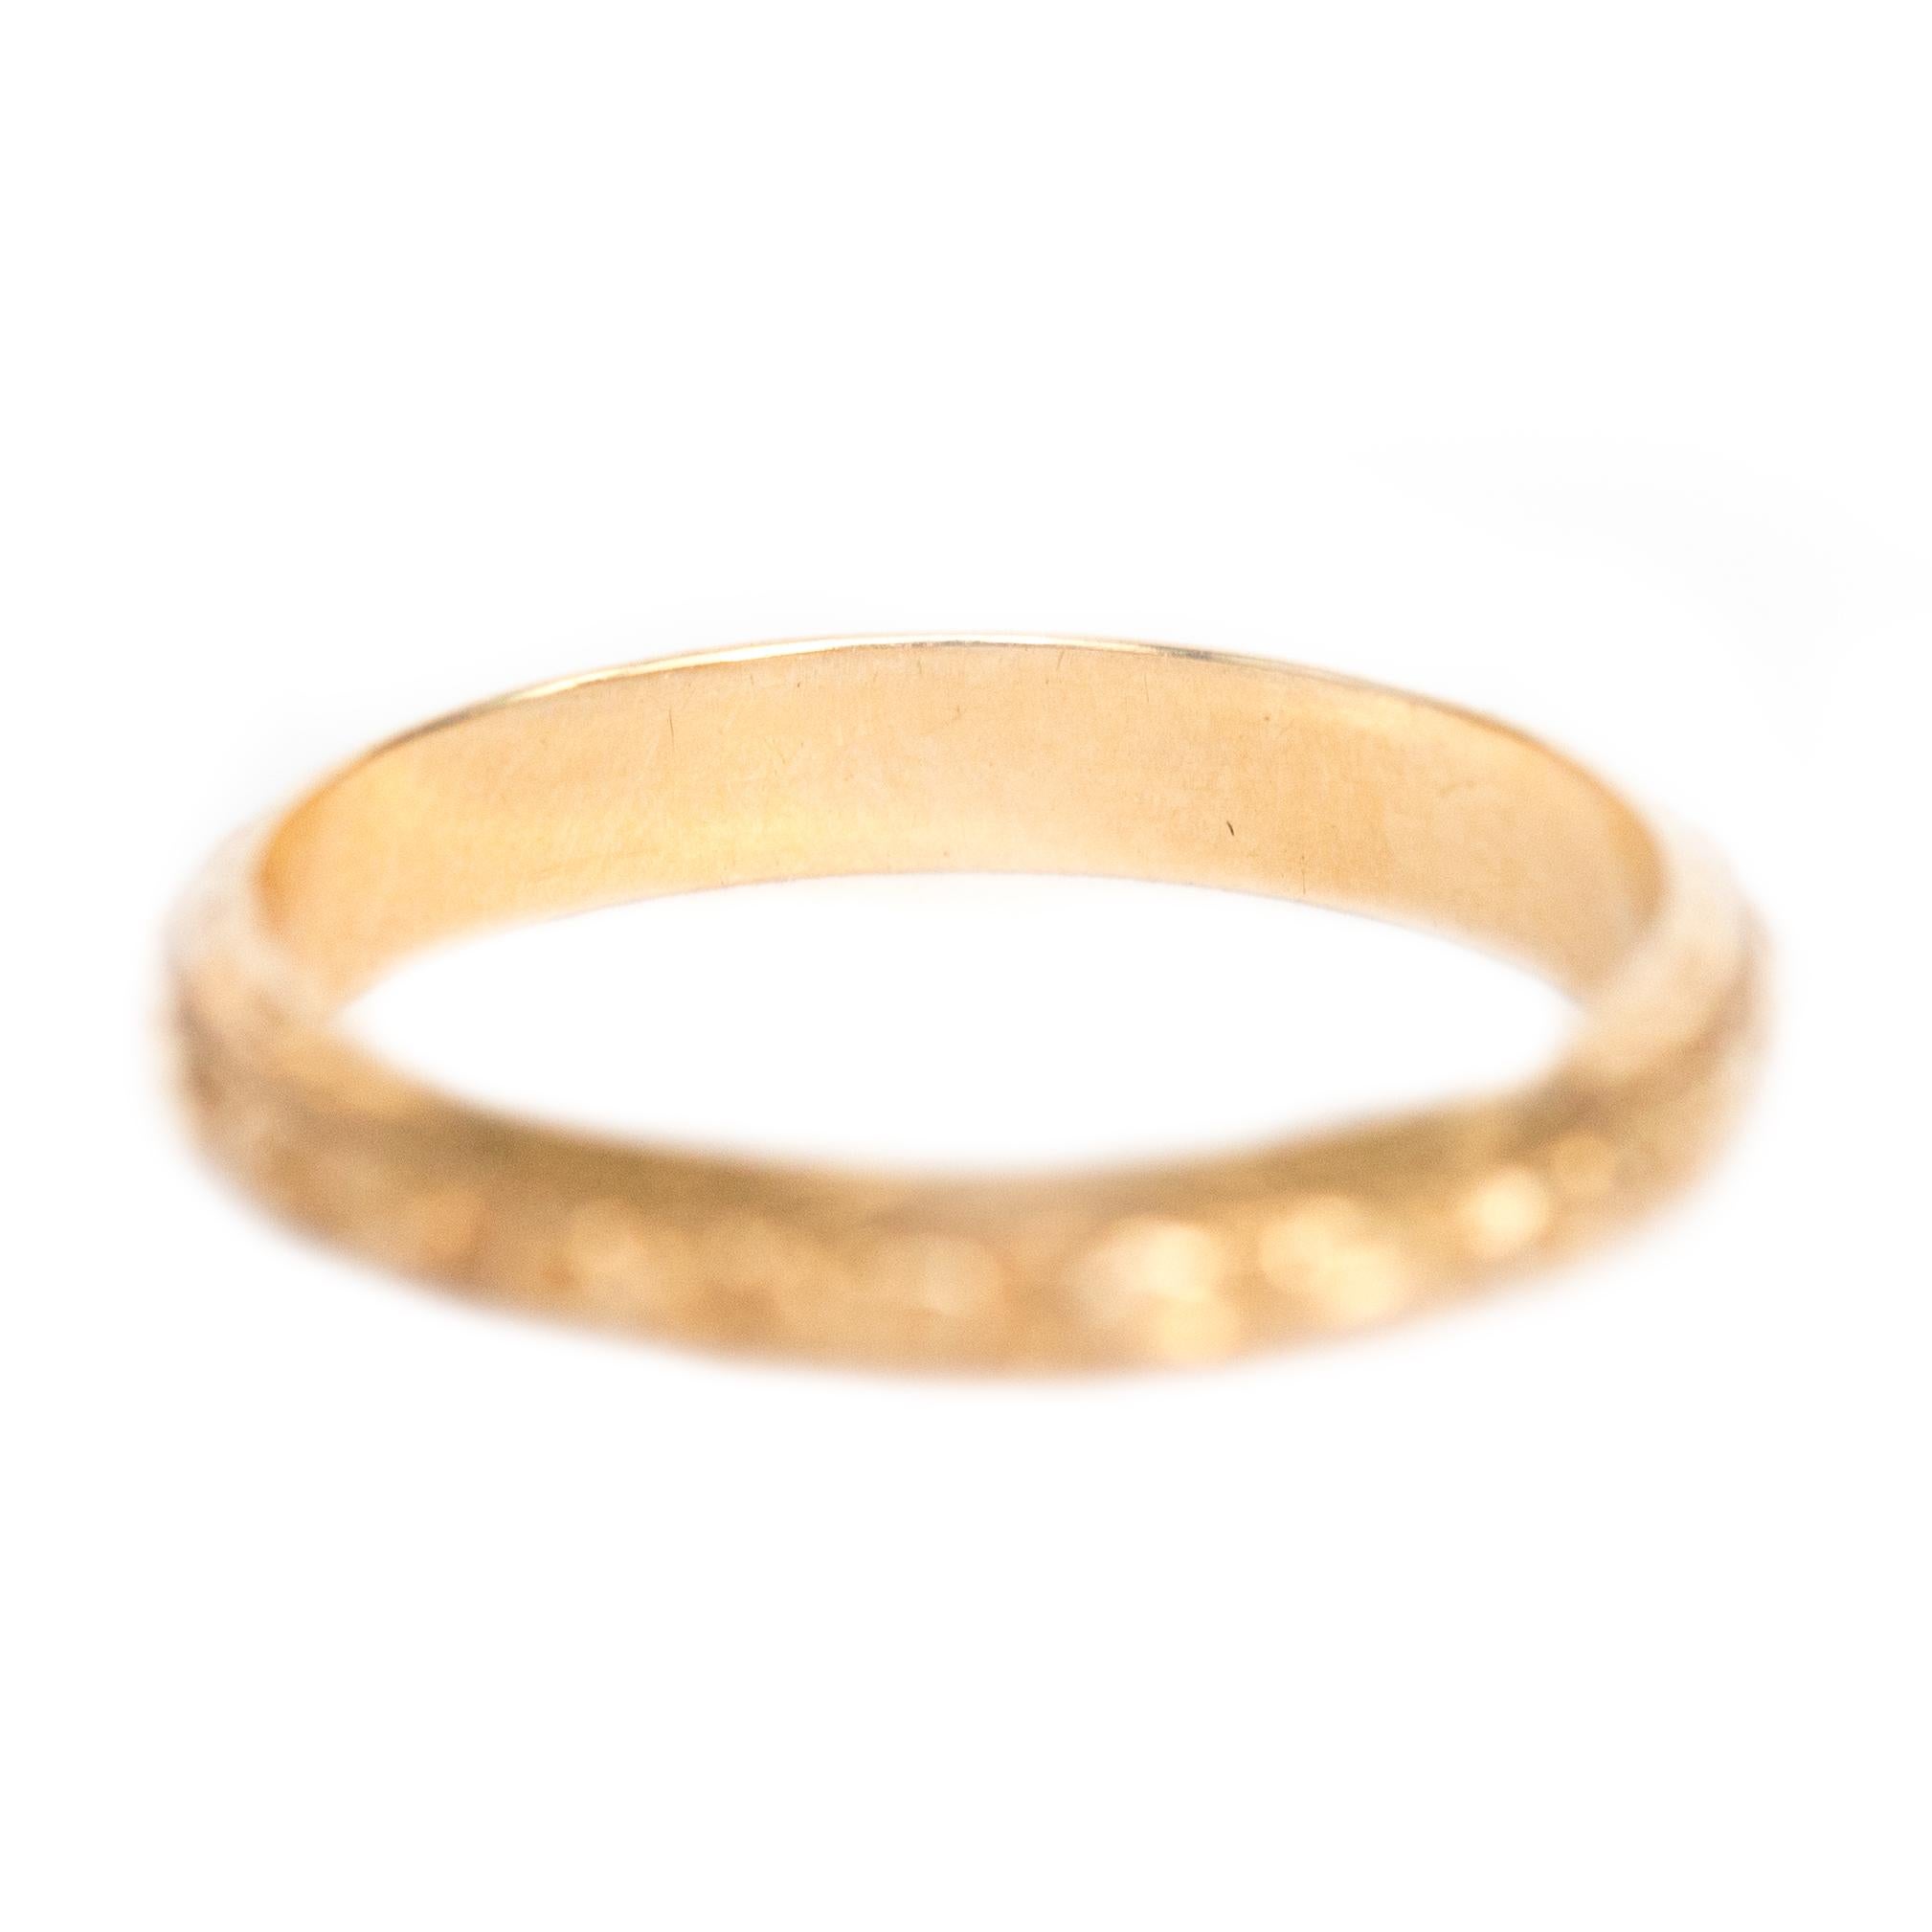 Item Details: 
Ring Size: 5.5
Metal Type: 14 Karat Yellow Gold
Weight: 2.1 grams

Finger to Top Measurement: 1.74mm